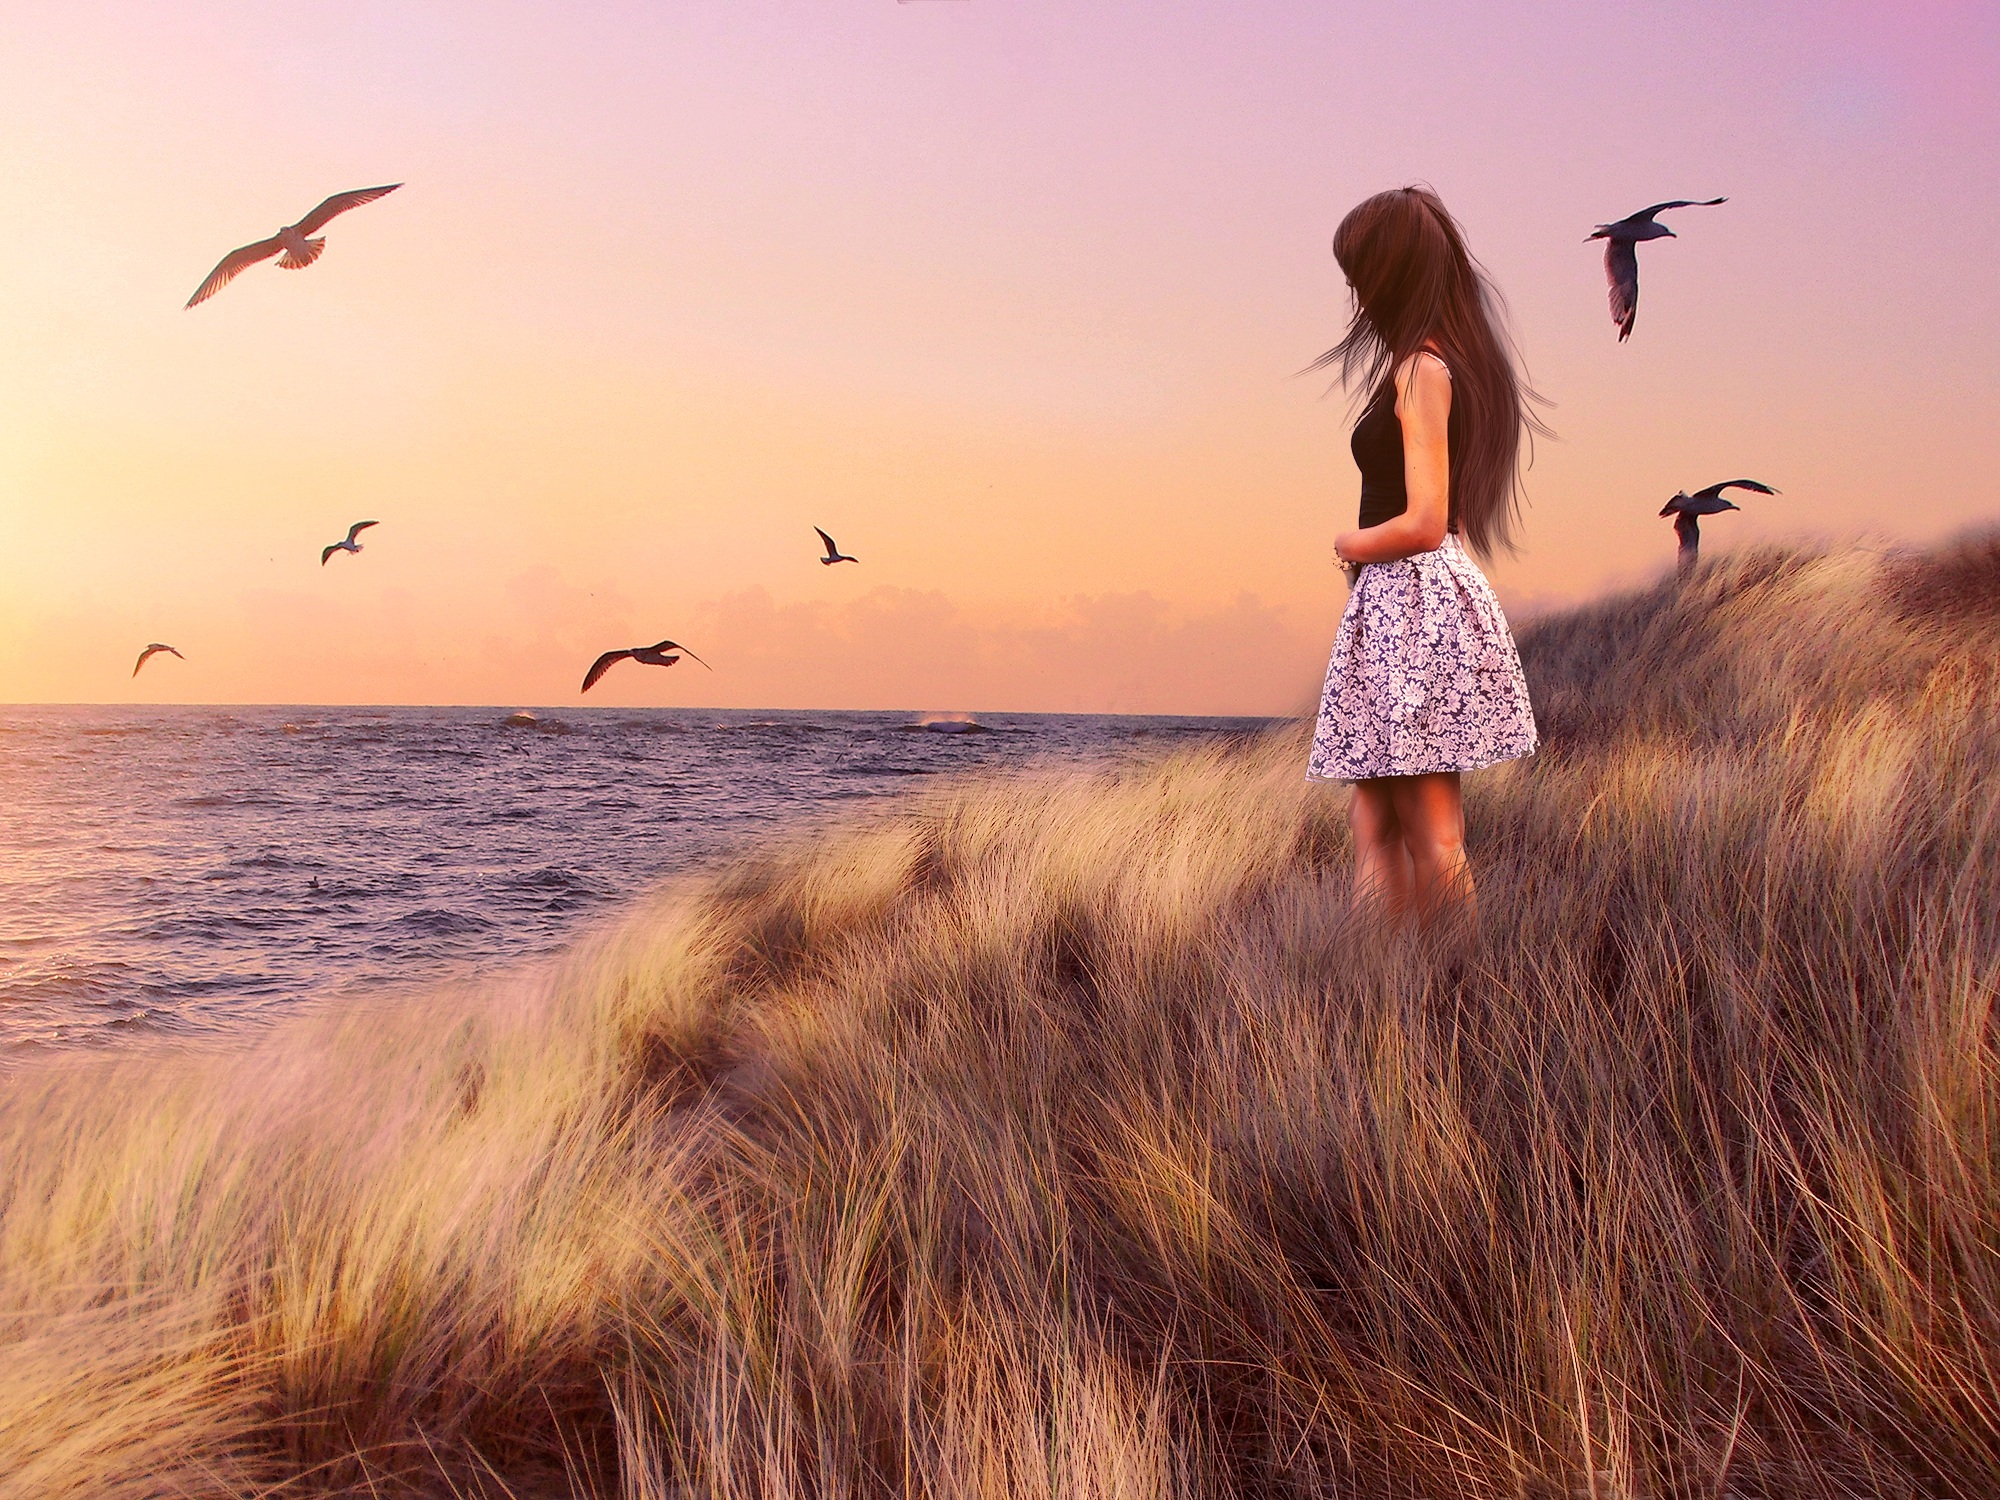 Бесплатное фото Девушка в платье стоит возле берега где летают чайки